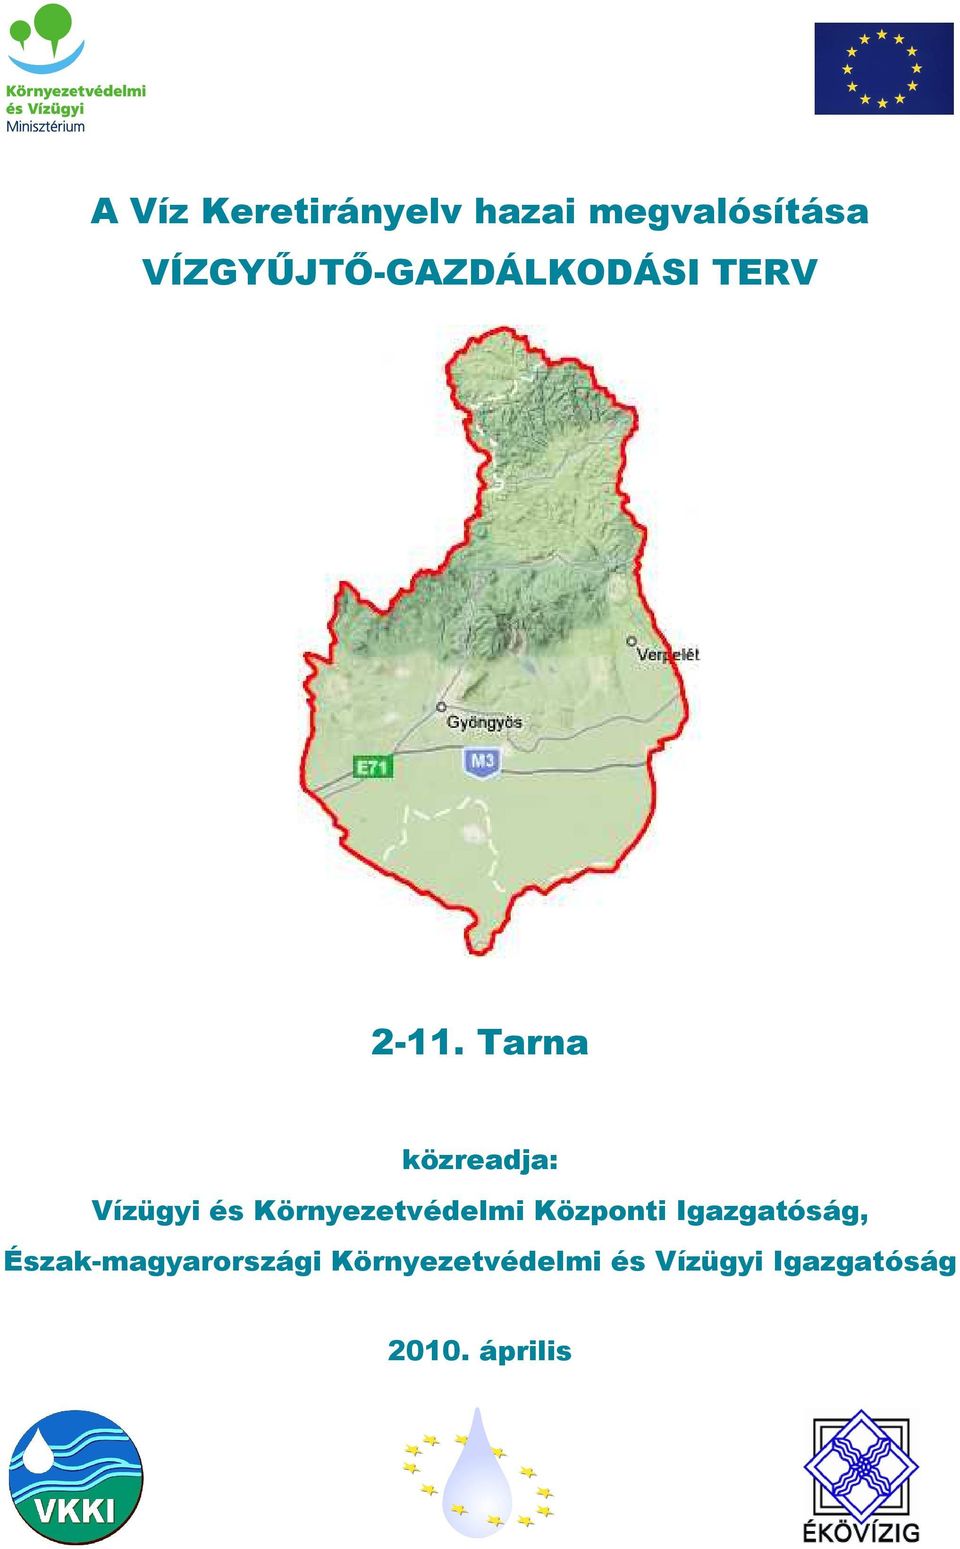 Tarna közreadja: Vízügyi és Környezetvédelmi Központi